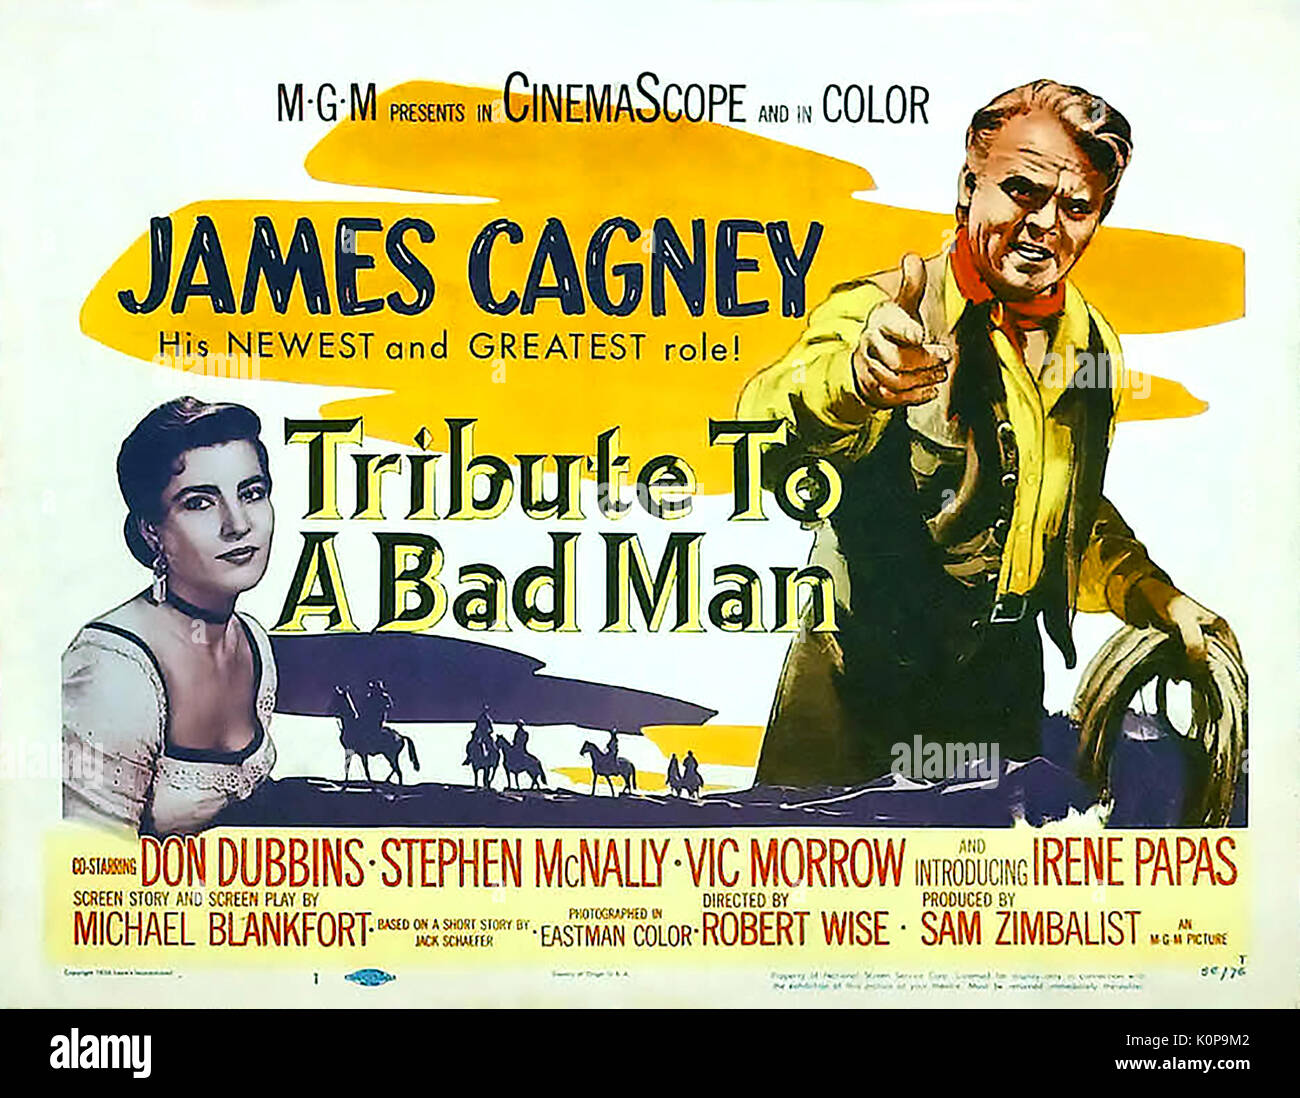 Homenaje a un hombre malo 1956 MGM occidental película con James Cagney y Irene Papas Foto de stock